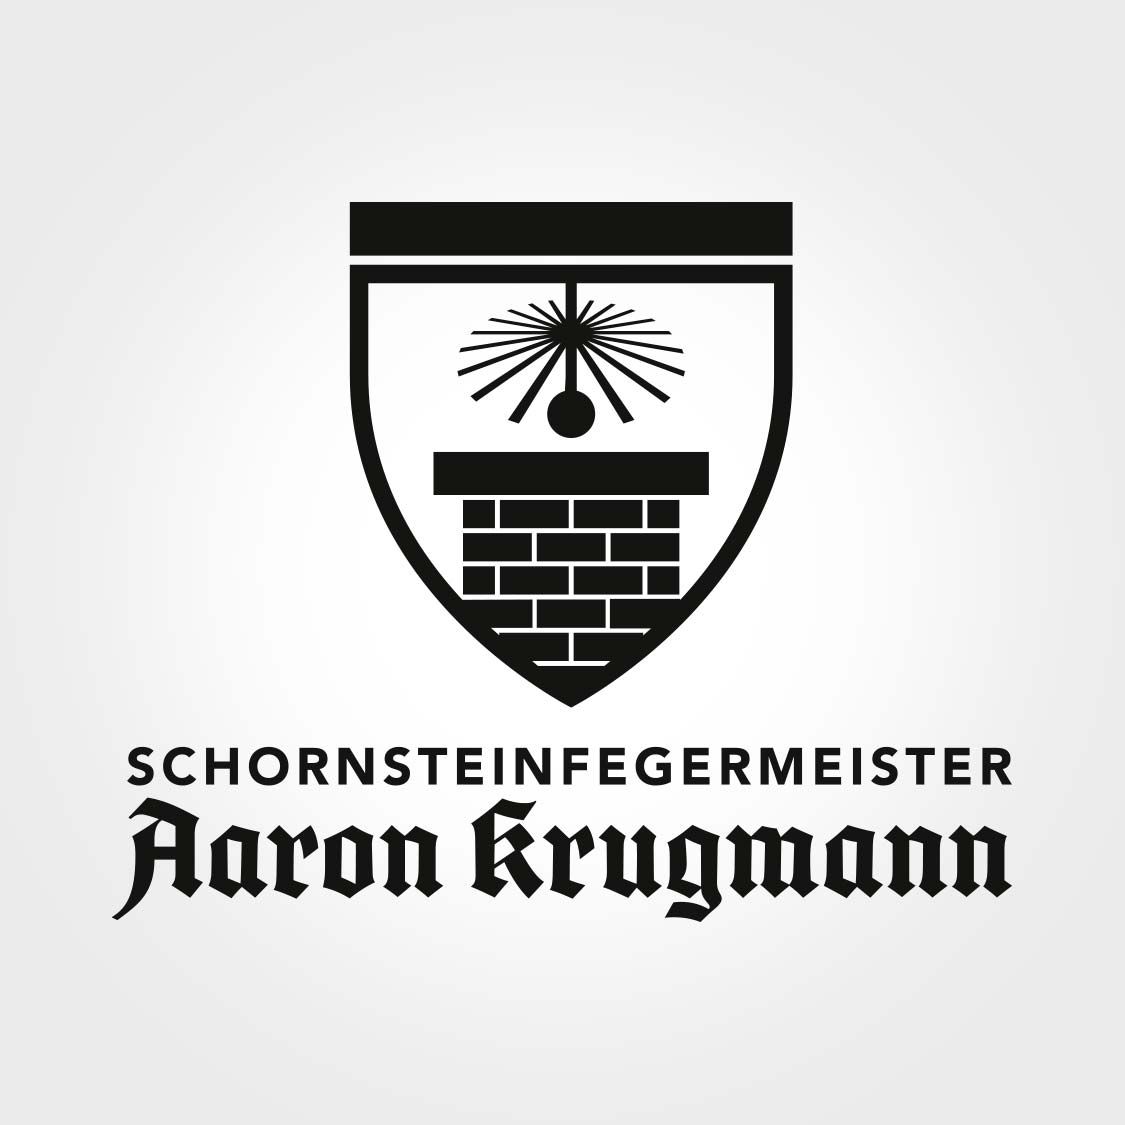 Ansicht des Logos, Logodesigns für den Schornsteinfeger Aaron Krugmann